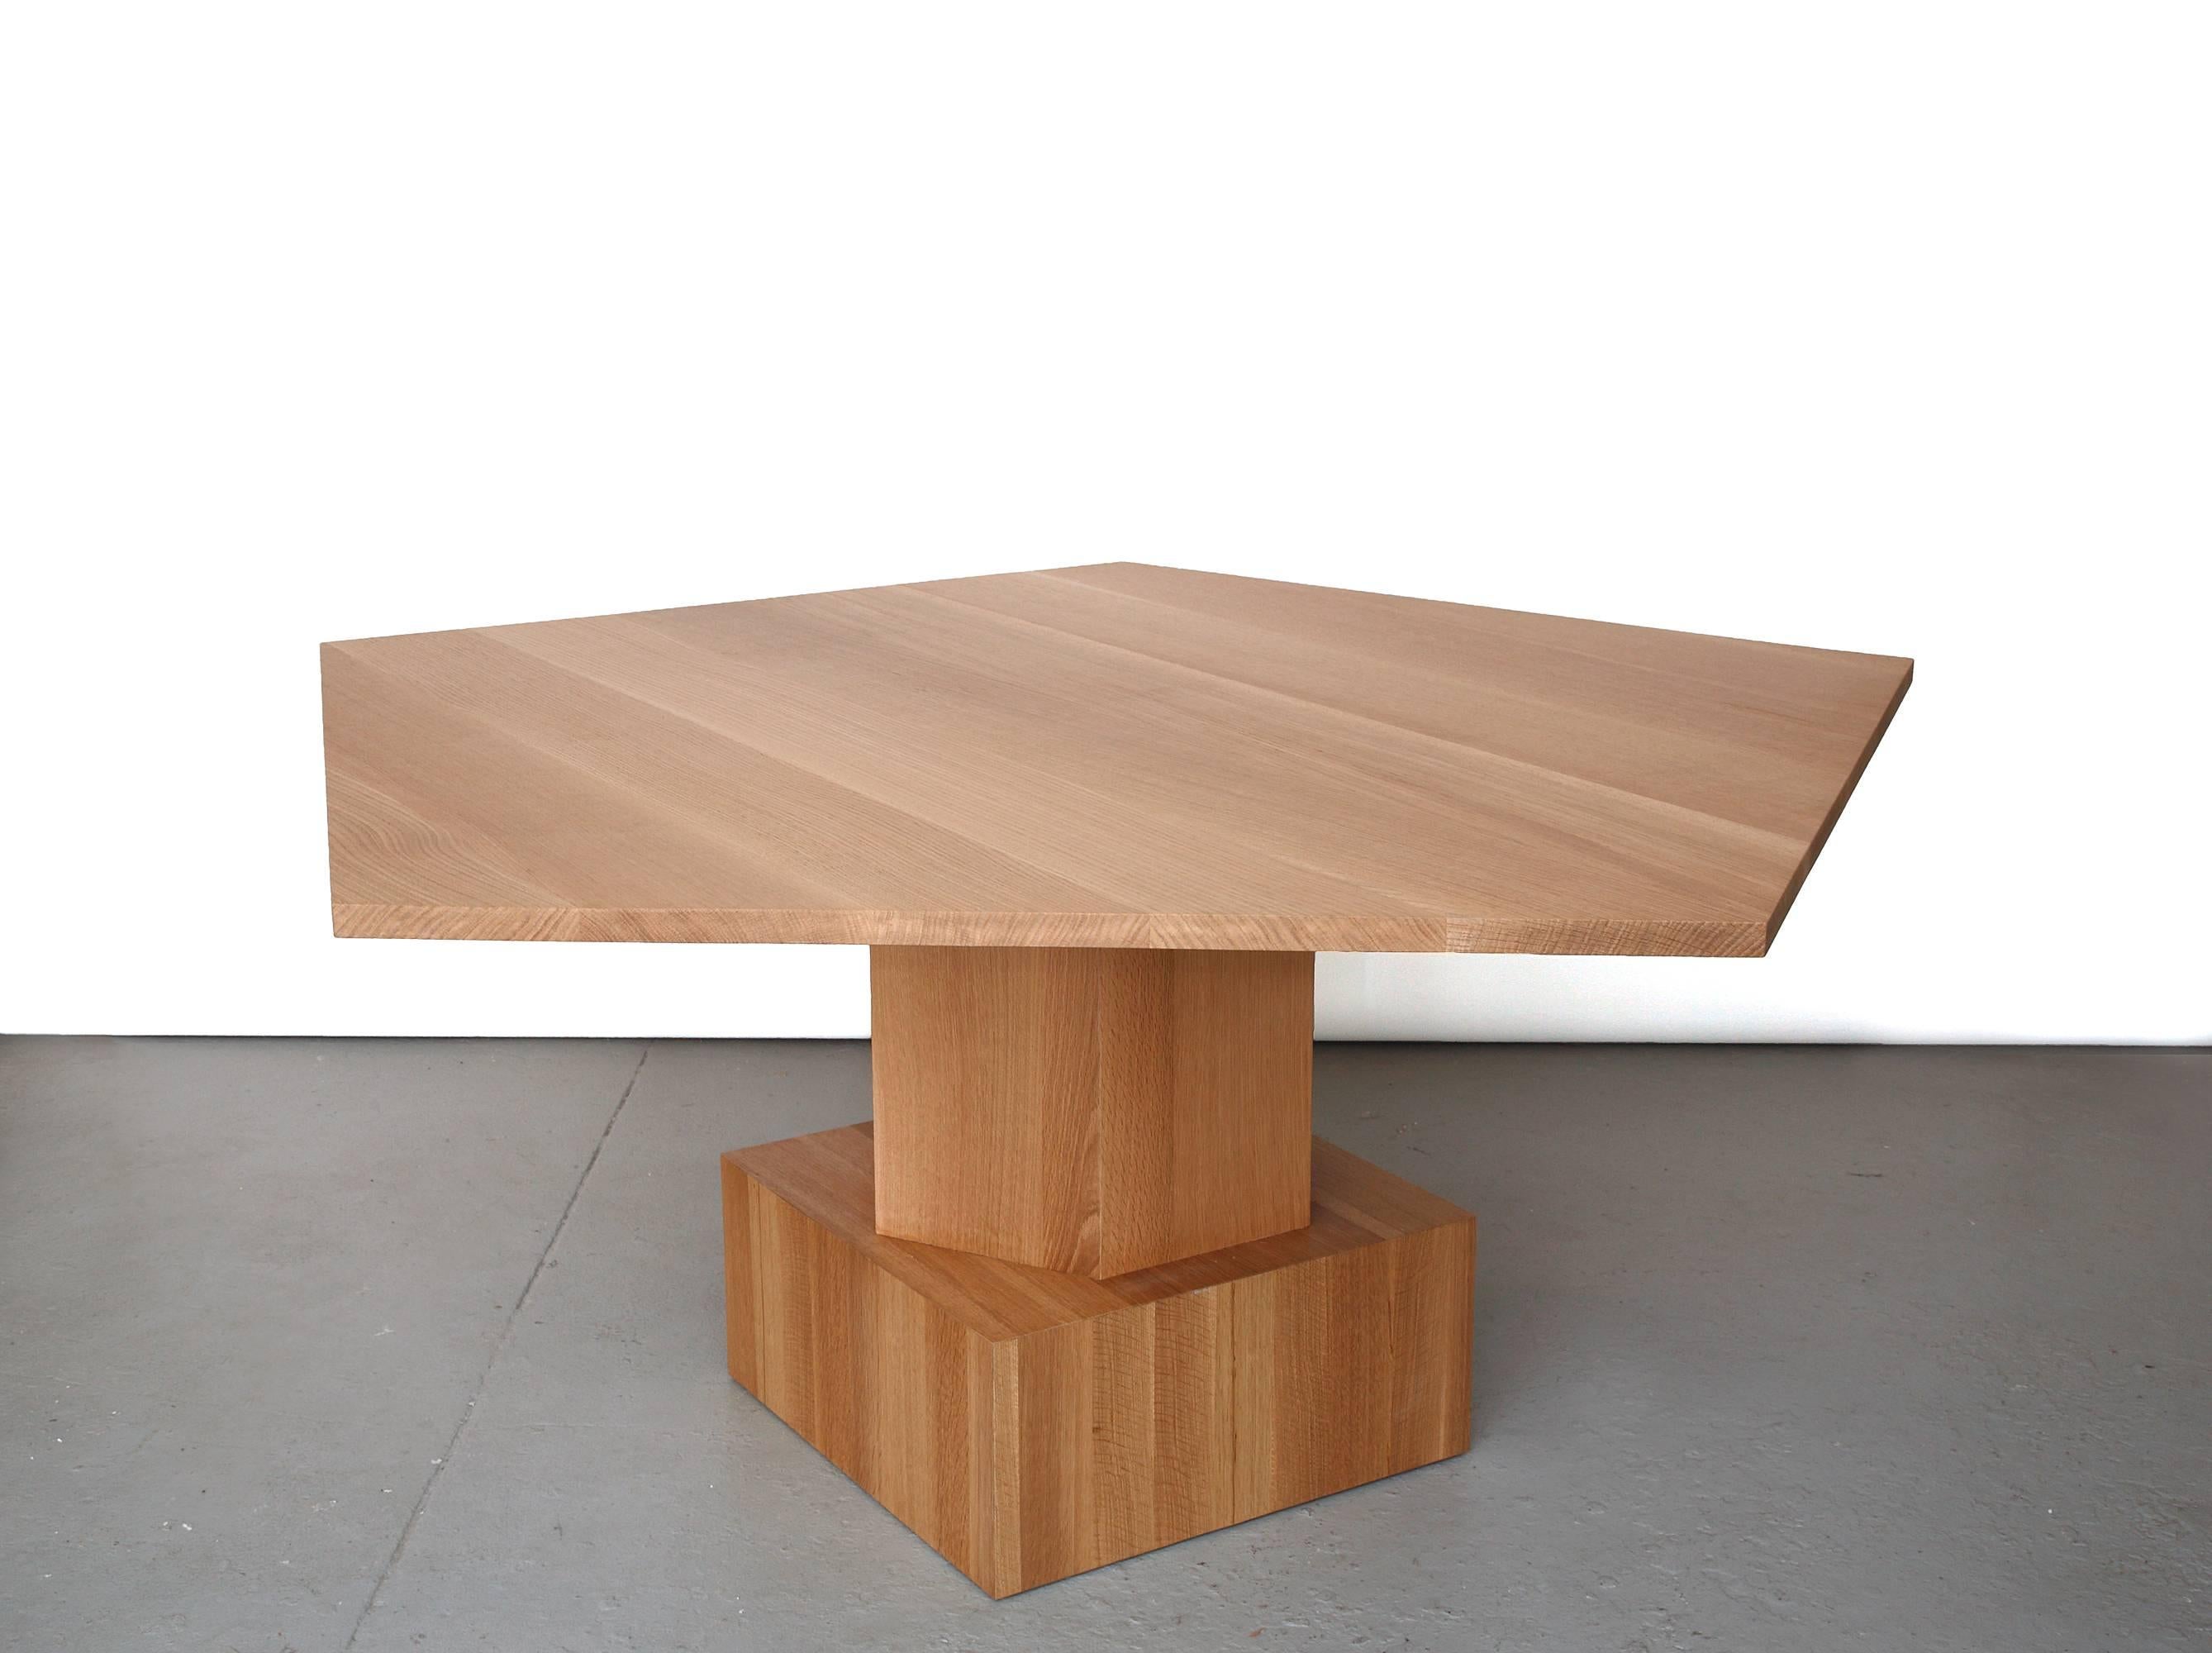 Ein atemberaubender Esstisch von Tinatin Kilaberidze.
Tinatin Kilaberidze, der mit geometrischen Formen arbeitet, wählte diese Fünfeckform für einen Esstisch, der allein oder als Paar für 10-12 Personen verwendet werden kann. Dies ist auch ein